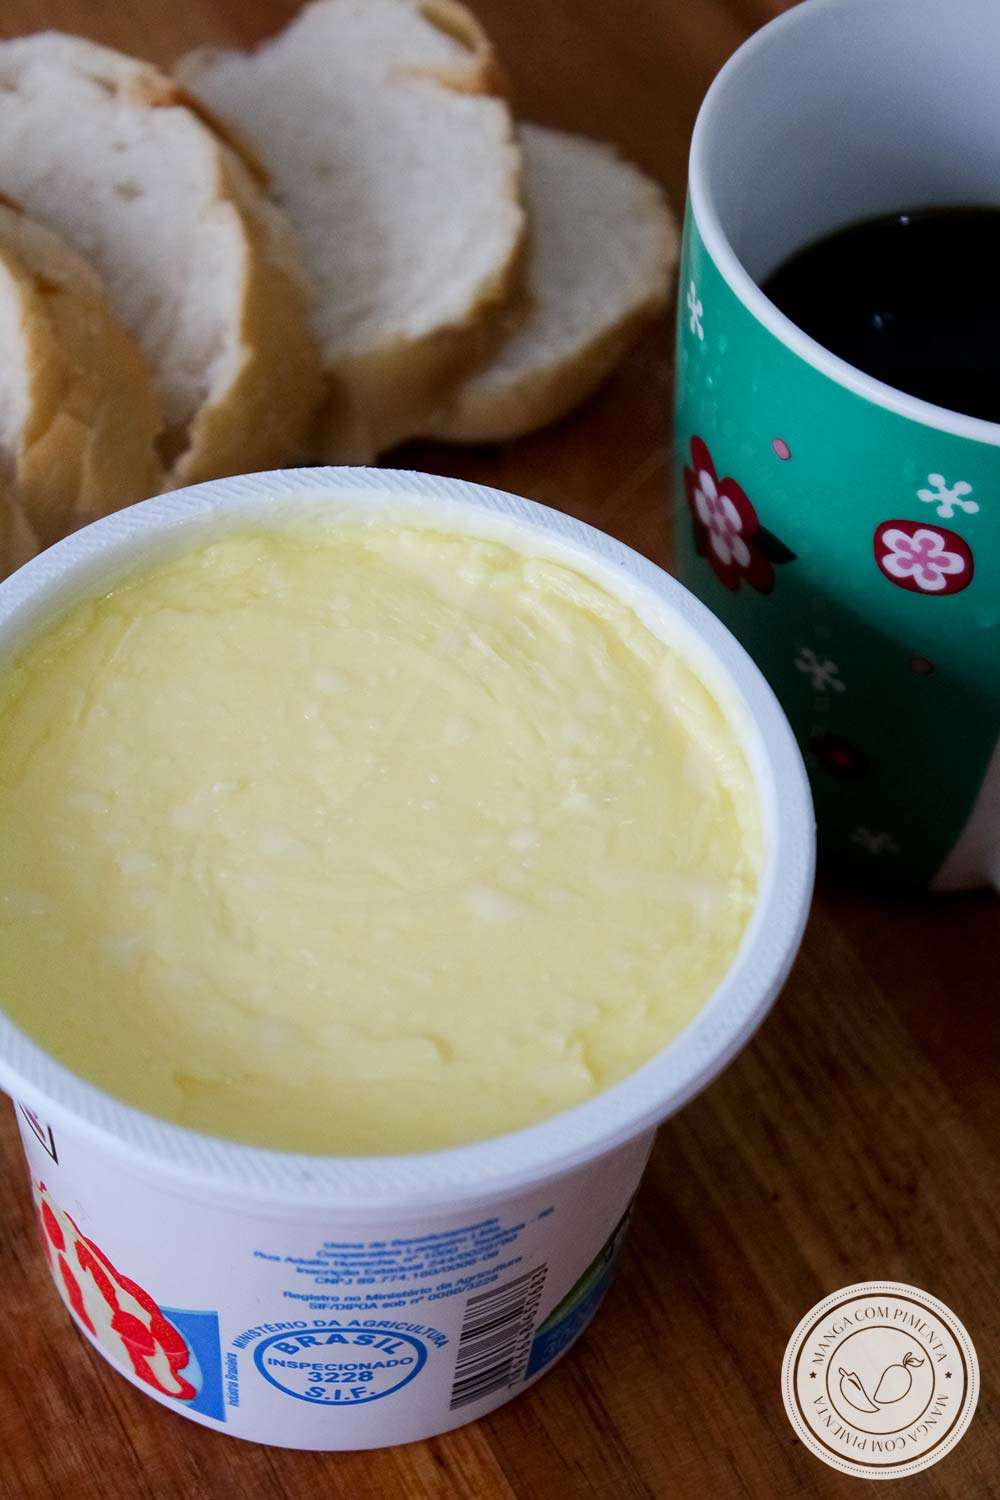 Aprenda a como fazer Manteiga Caseira - veja como é fácil preparar essa delícia em casa.